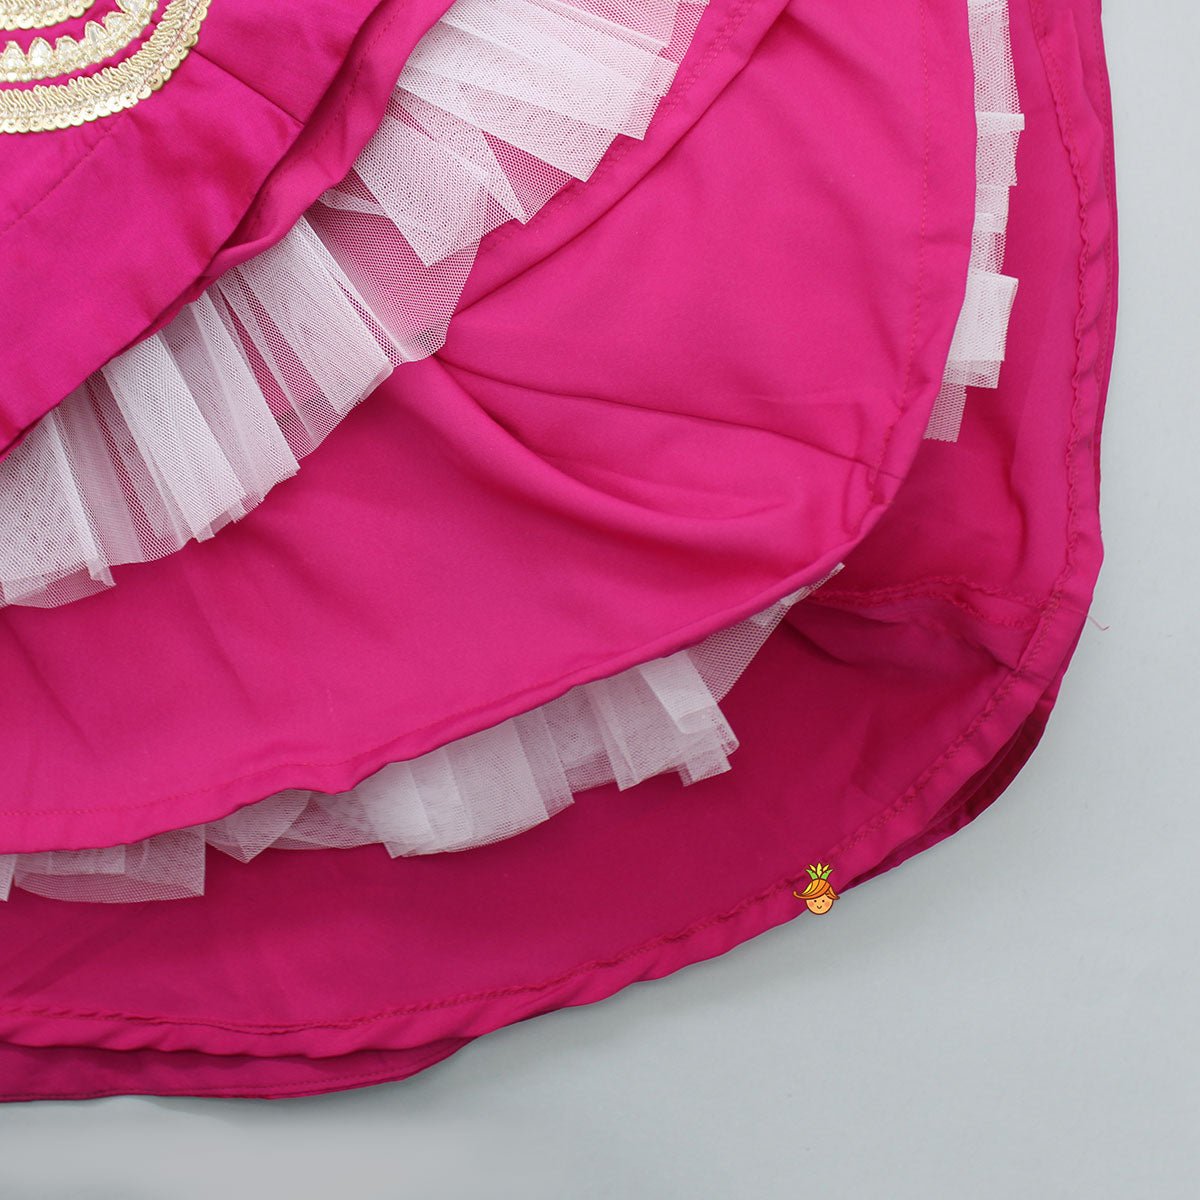 Gota Work Hot Pink Top  And Elegant Tassels Embellished Flared Lehenga With Net Dupatta